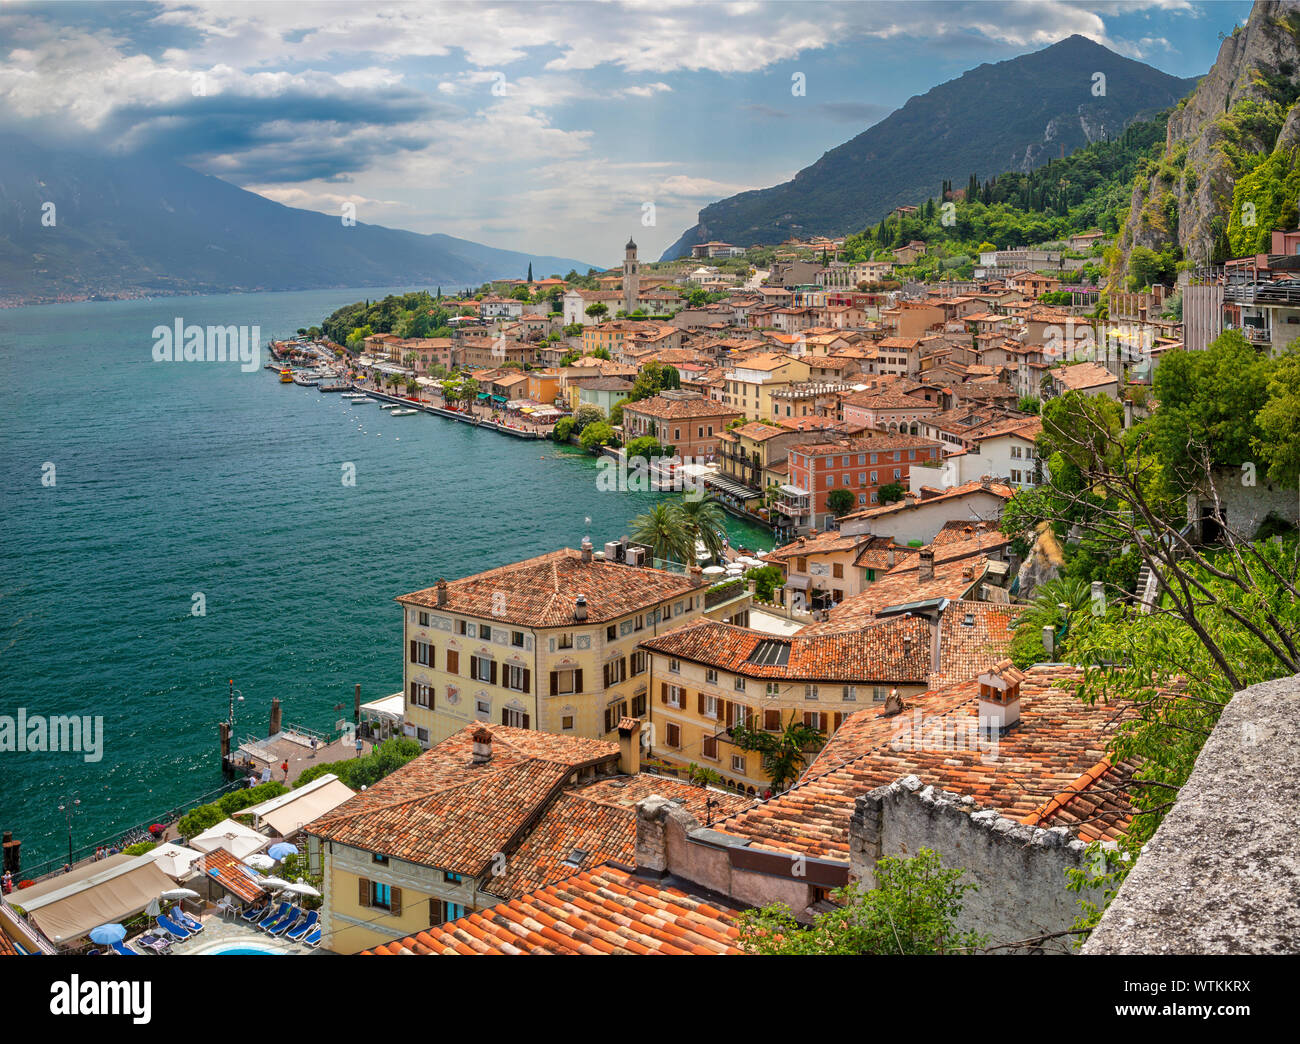 Limone sul Garda - Die kleine Stadt unter den Alpen Felsen auf dem Lago di Garda See. Stockfoto